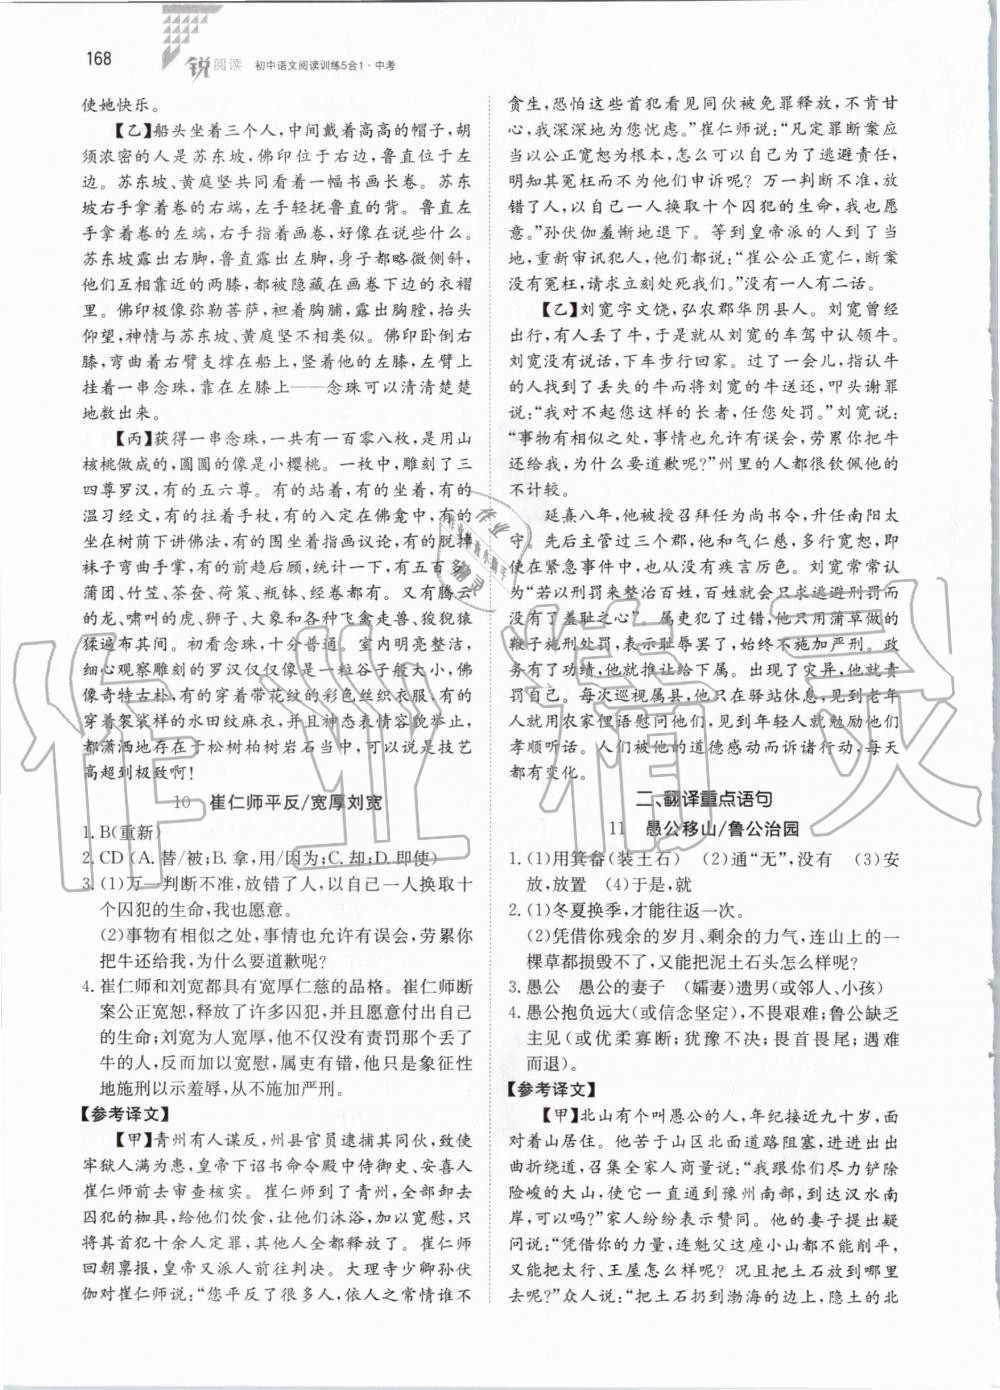 2019年锐阅读初中语文阅读训练5合1中考 第14页